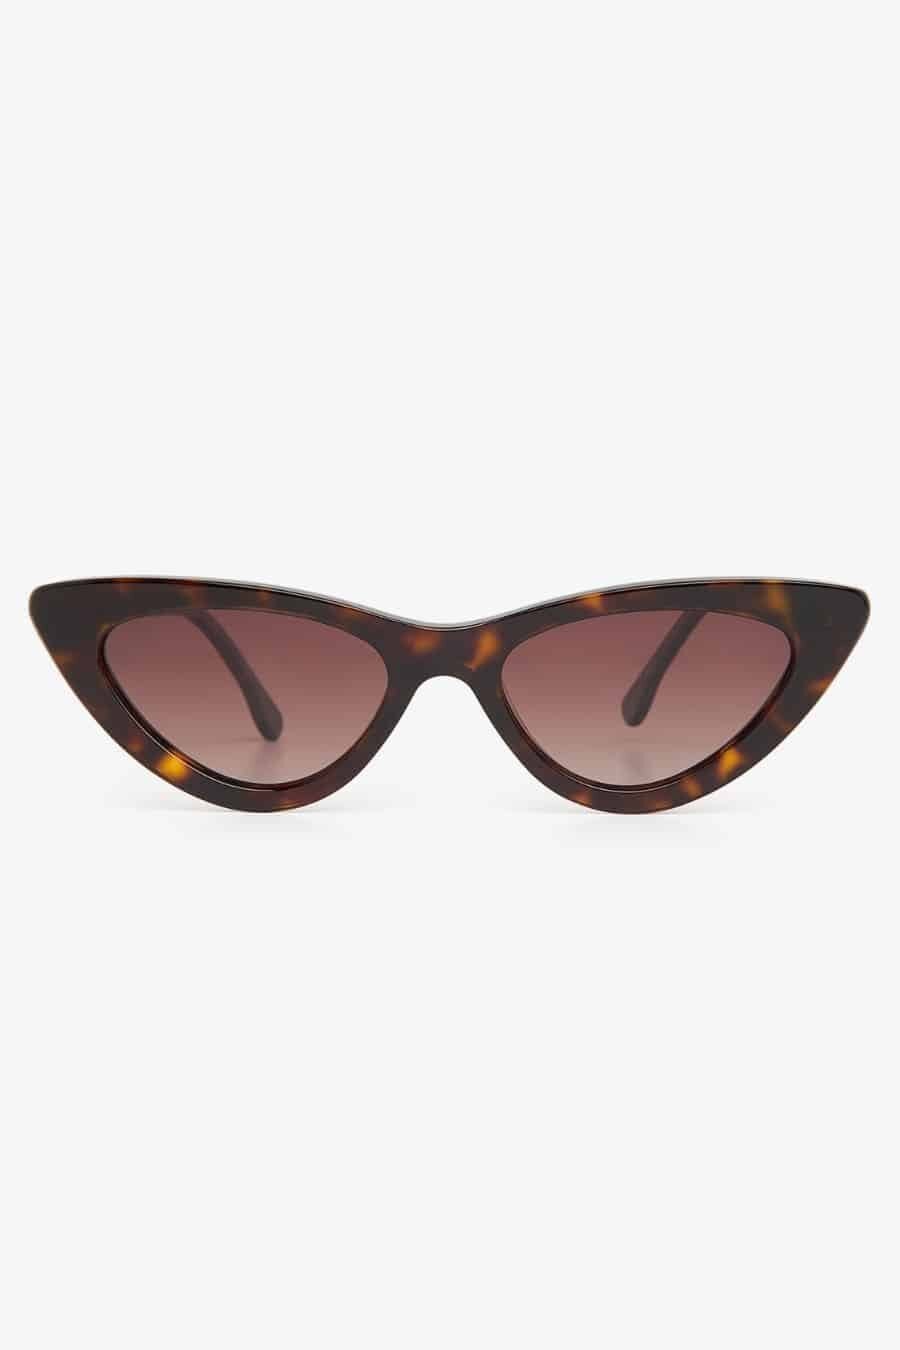 Rita Row - Sunglasses Fagus